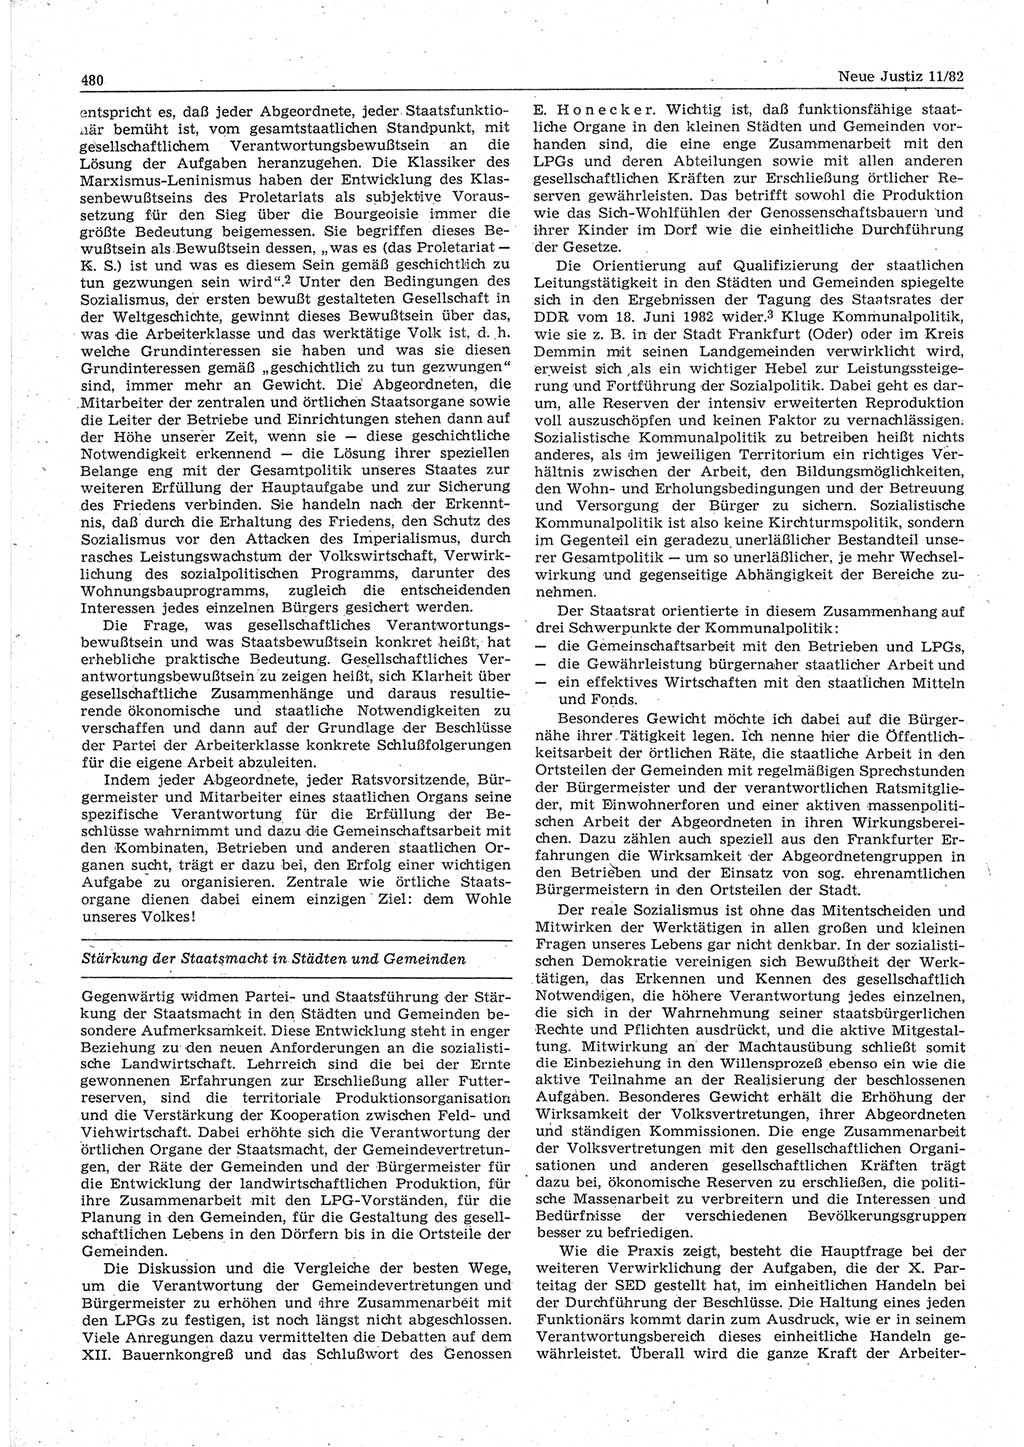 Neue Justiz (NJ), Zeitschrift für sozialistisches Recht und Gesetzlichkeit [Deutsche Demokratische Republik (DDR)], 36. Jahrgang 1982, Seite 480 (NJ DDR 1982, S. 480)